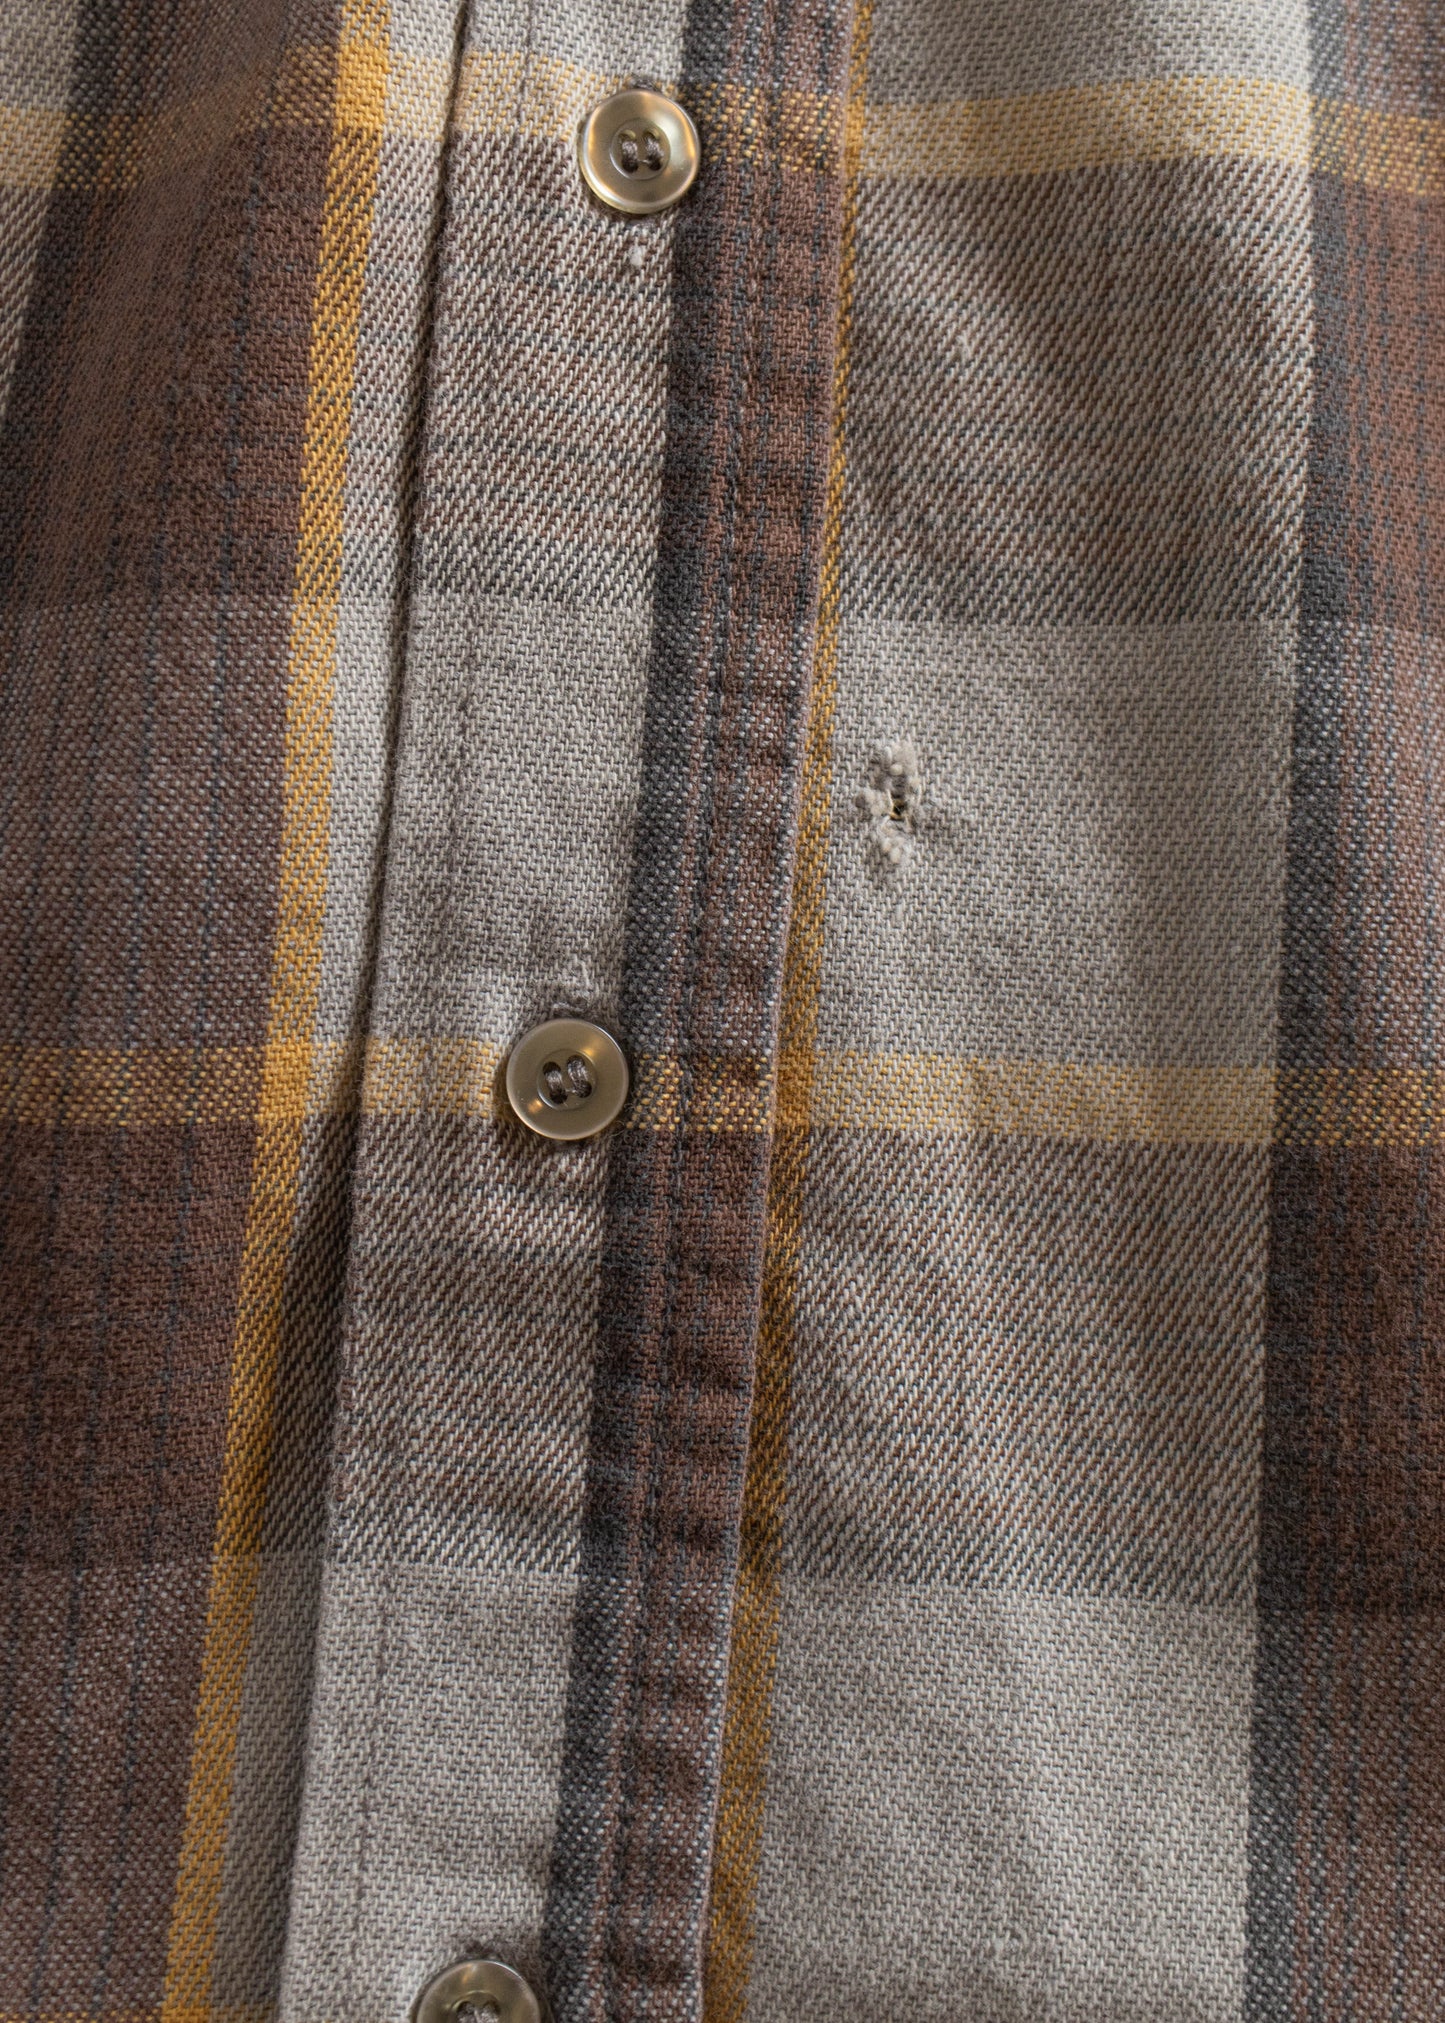 1980s Eddie Bauer Light Flannel Button Up Shirt Size 2XS/XS